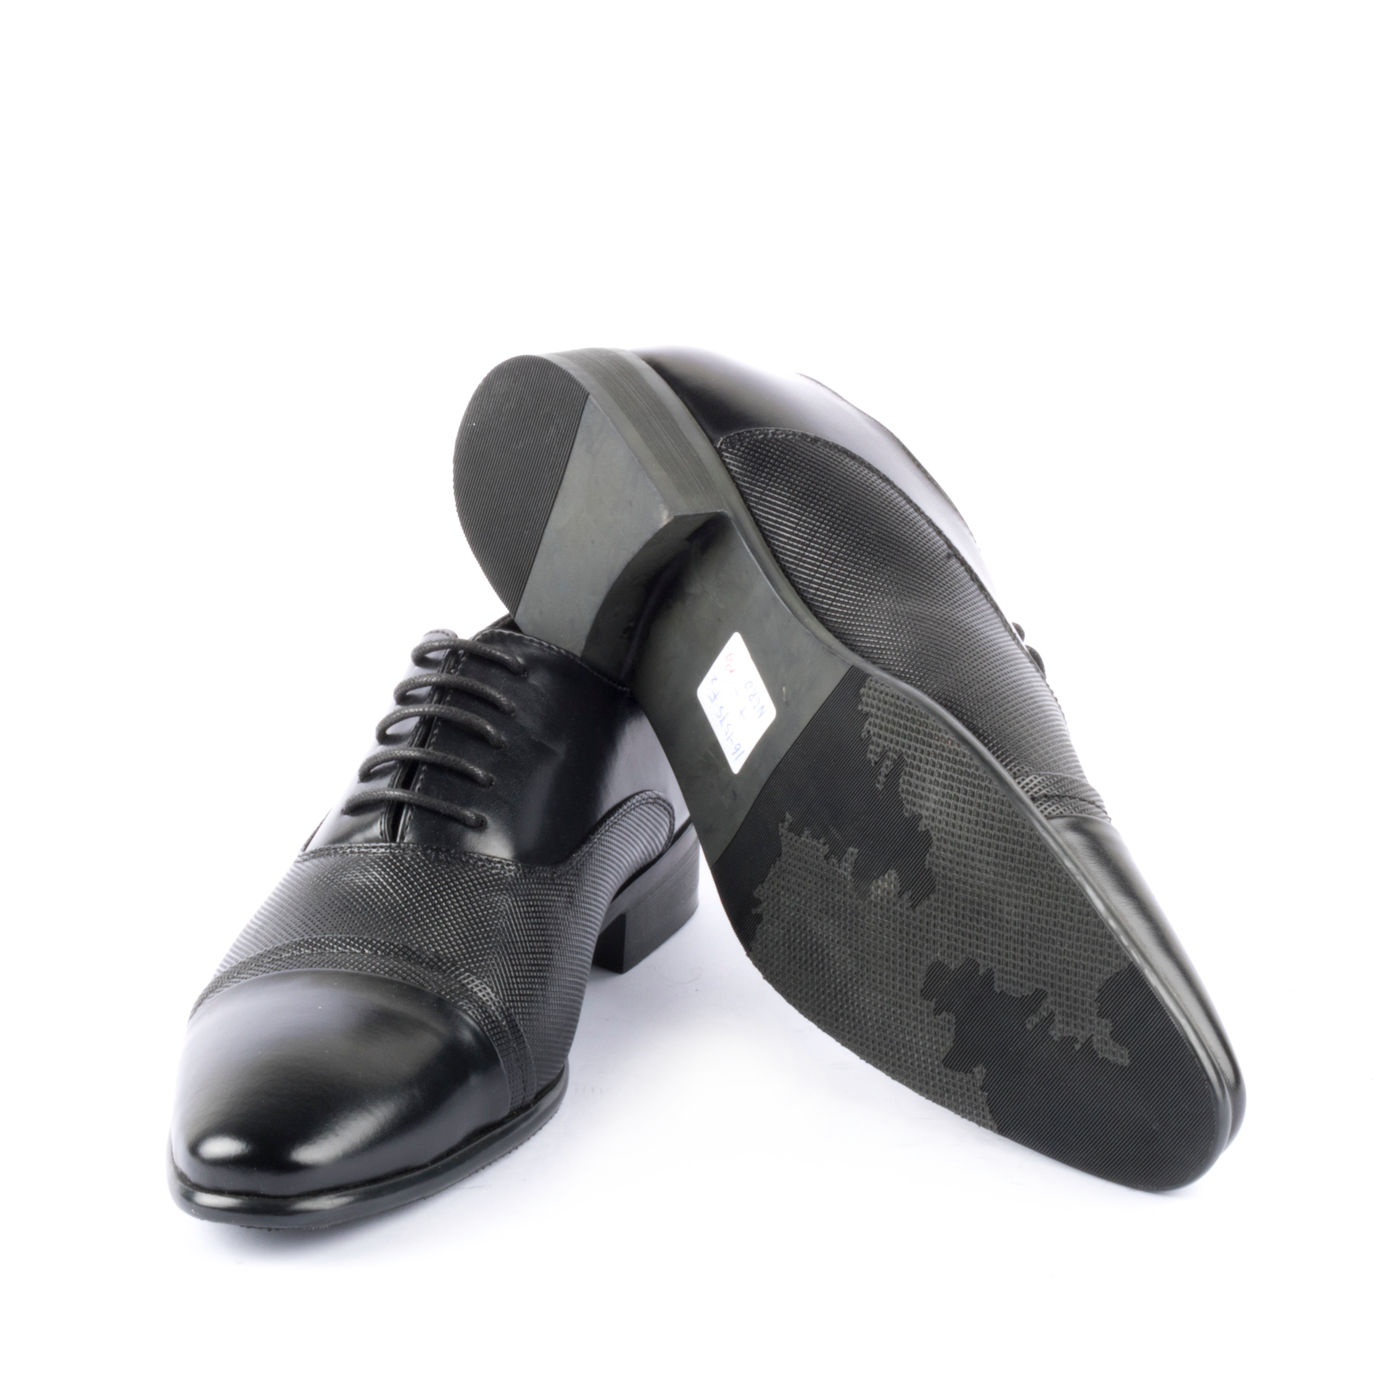 ZORRO - Scarpa elegante uomo stile Oxford con punta arrotondata - Nero -  MitShopping - Abbigliamento e scarpe